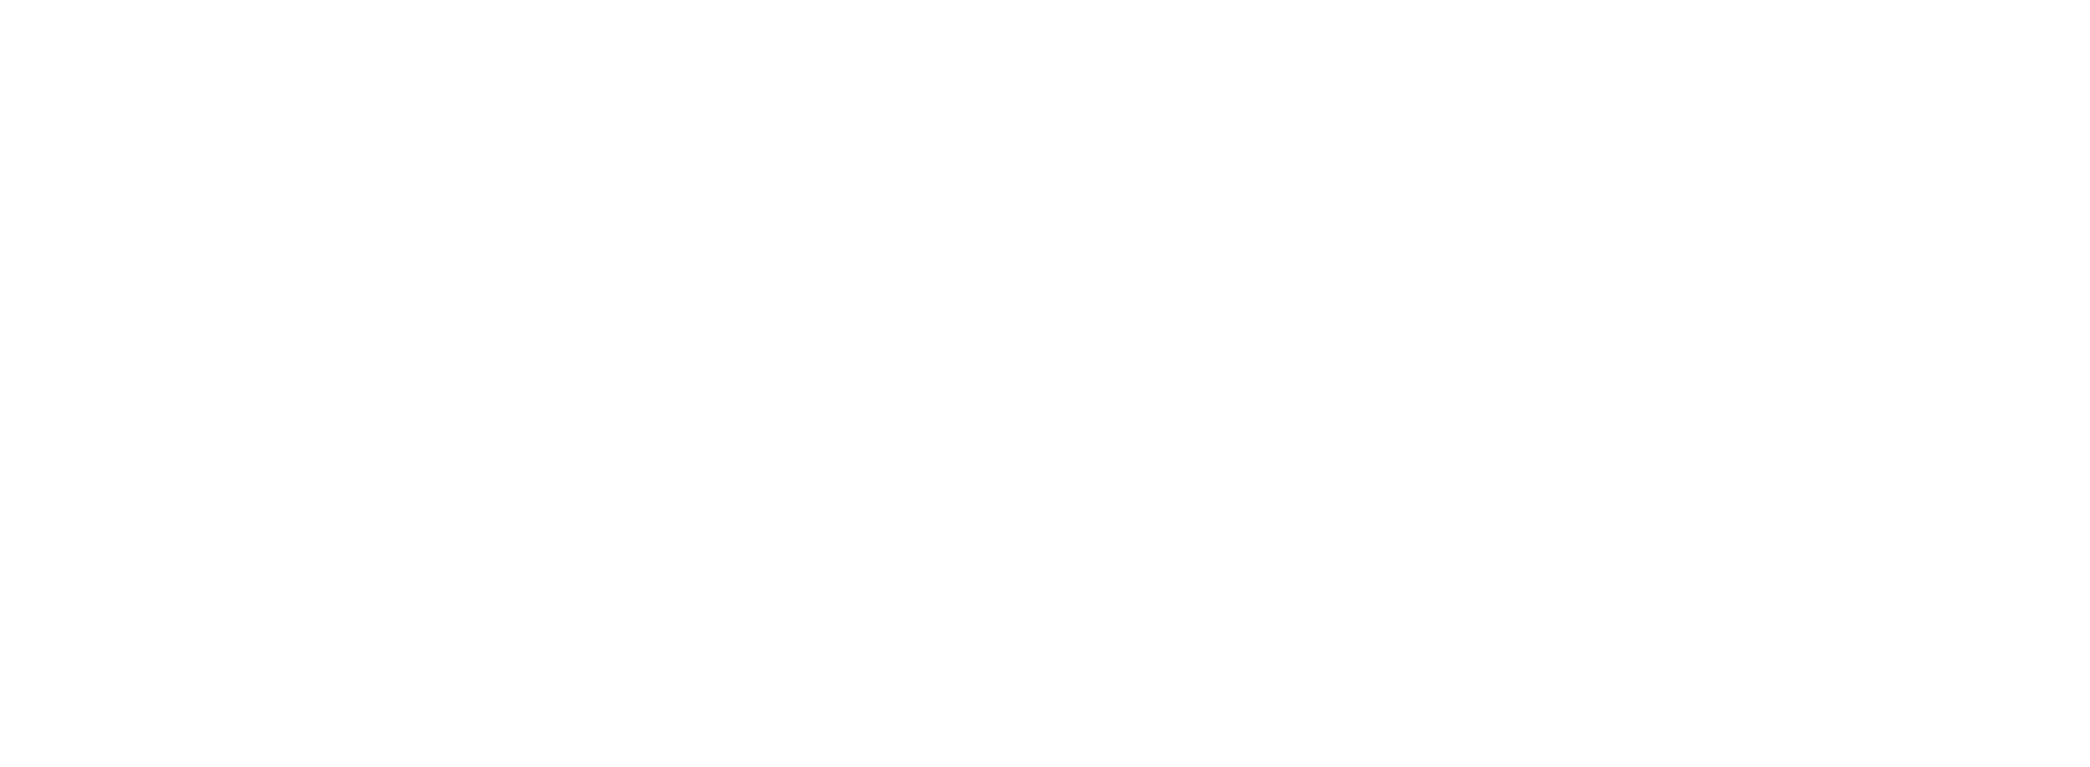 Ufc logo